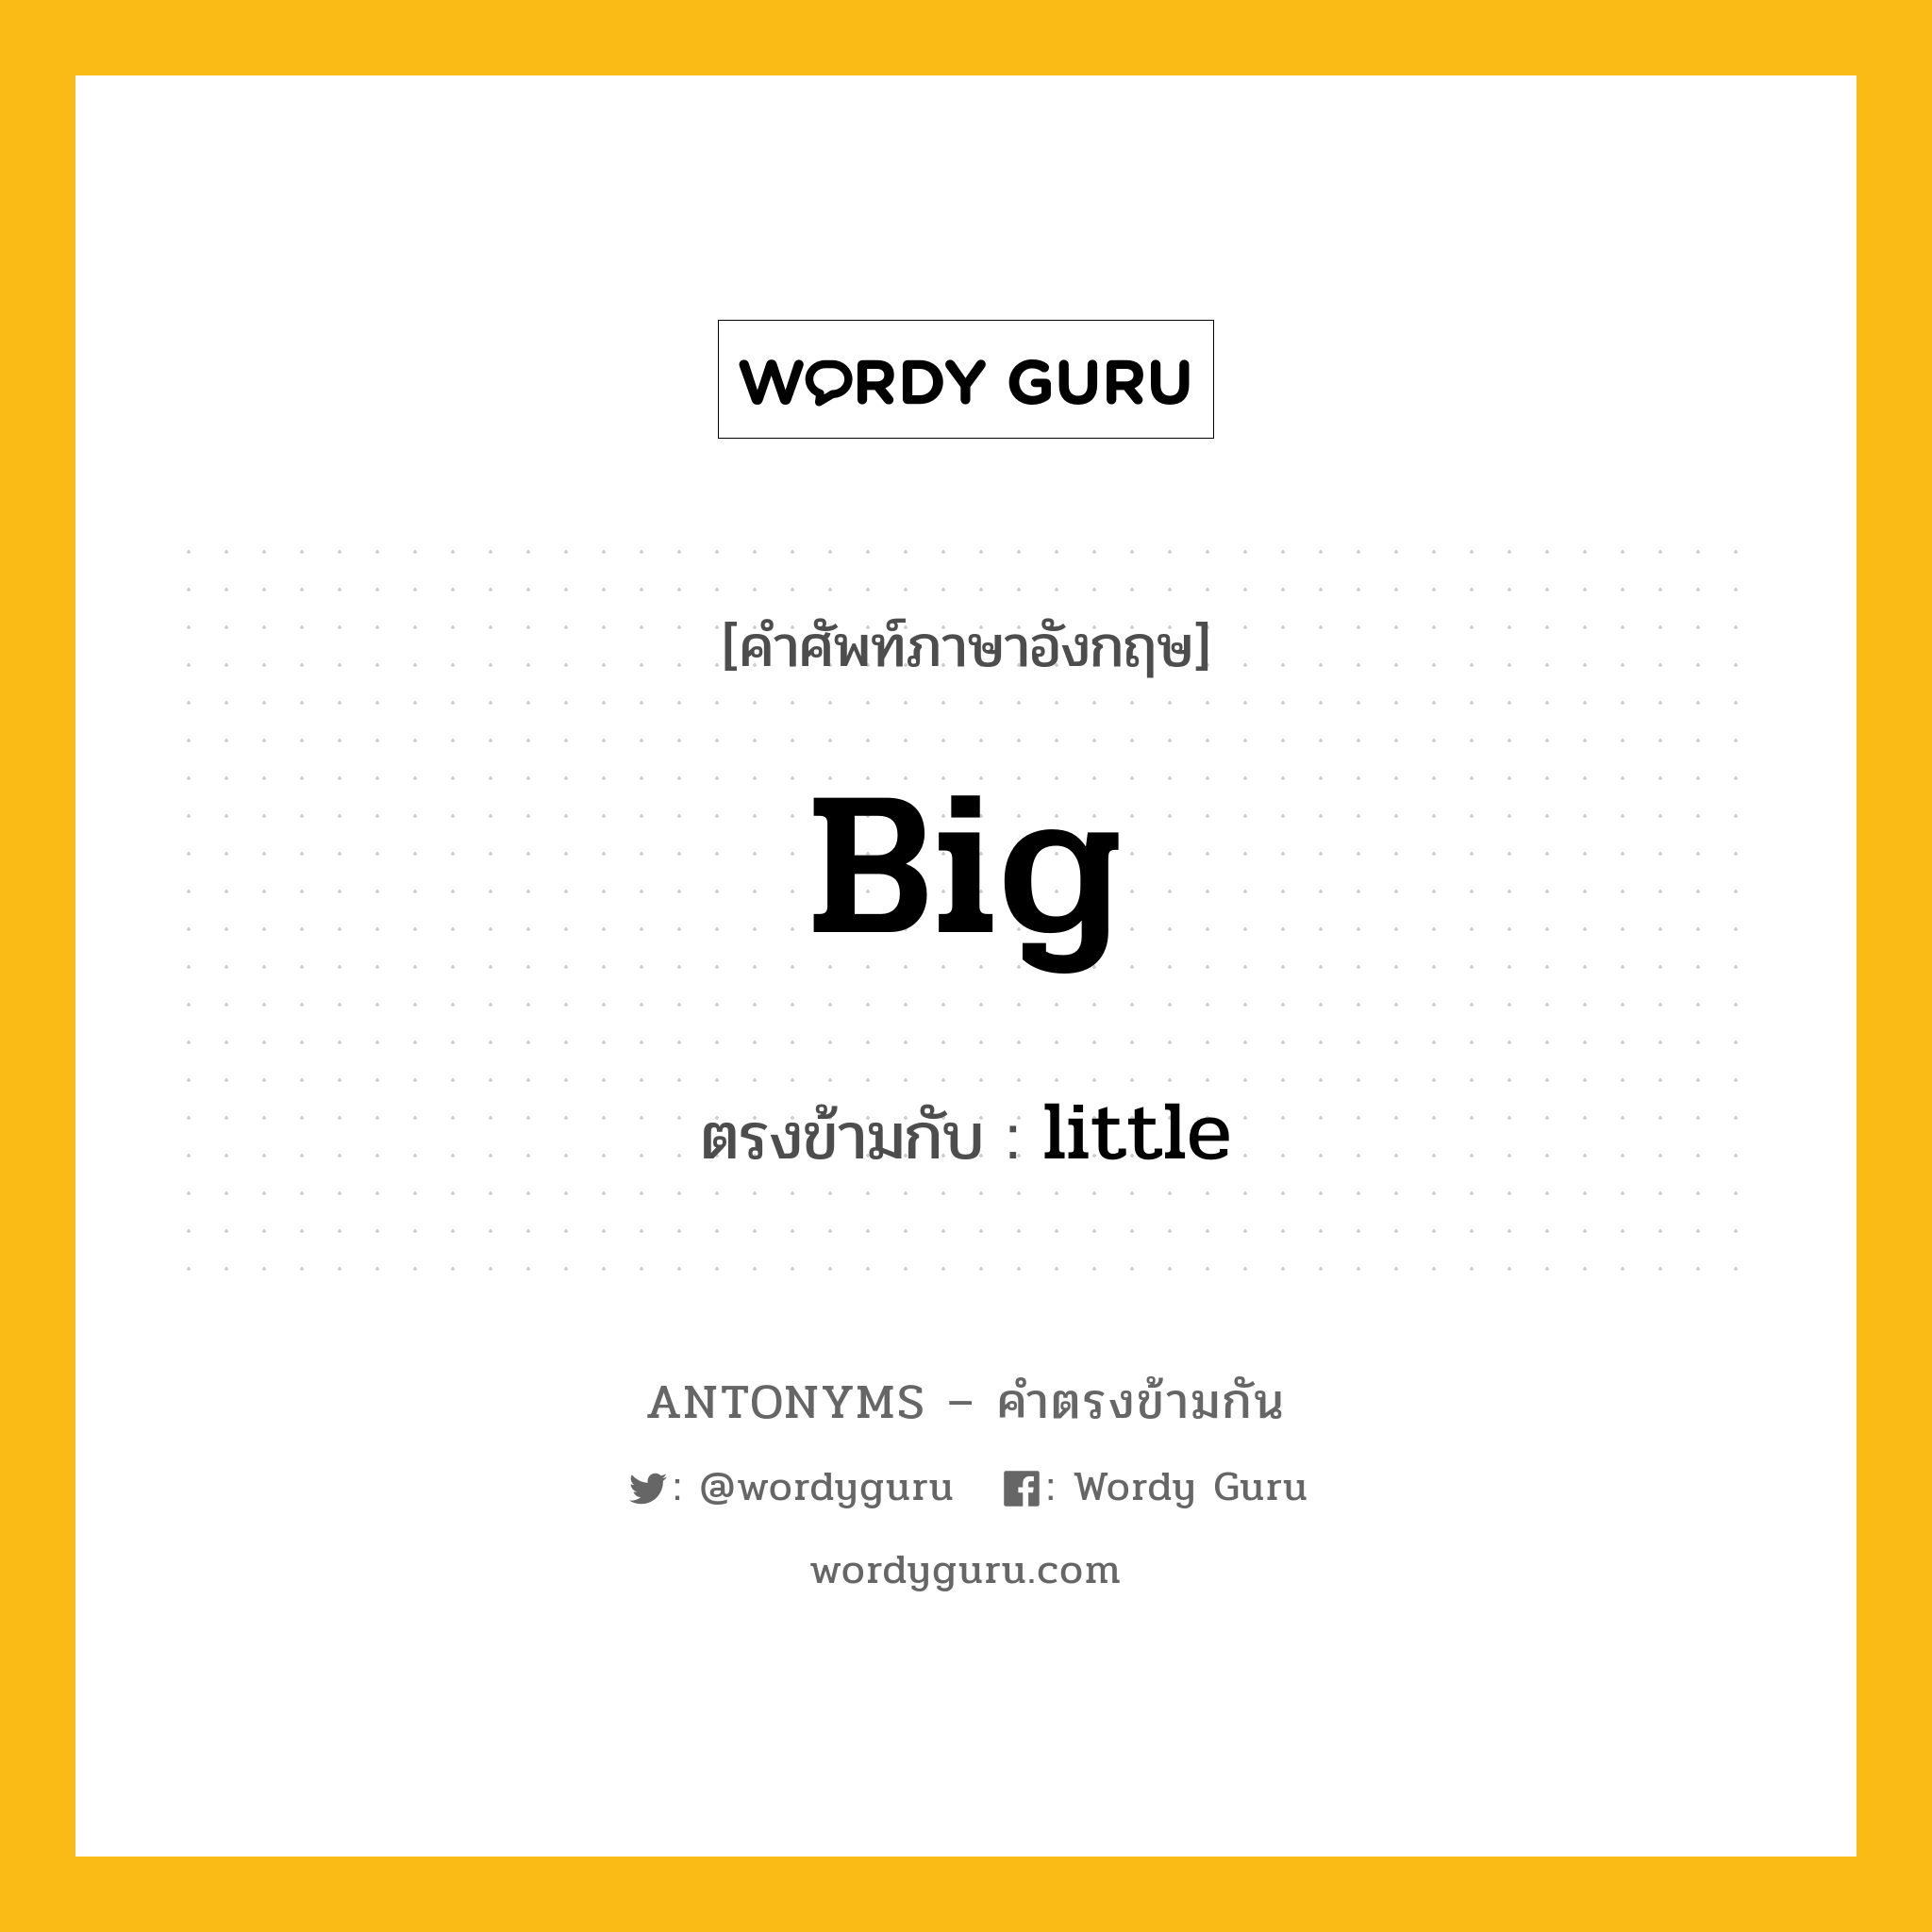 big เป็นคำตรงข้ามกับคำไหนบ้าง?, คำศัพท์ภาษาอังกฤษ big ตรงข้ามกับ little หมวด little